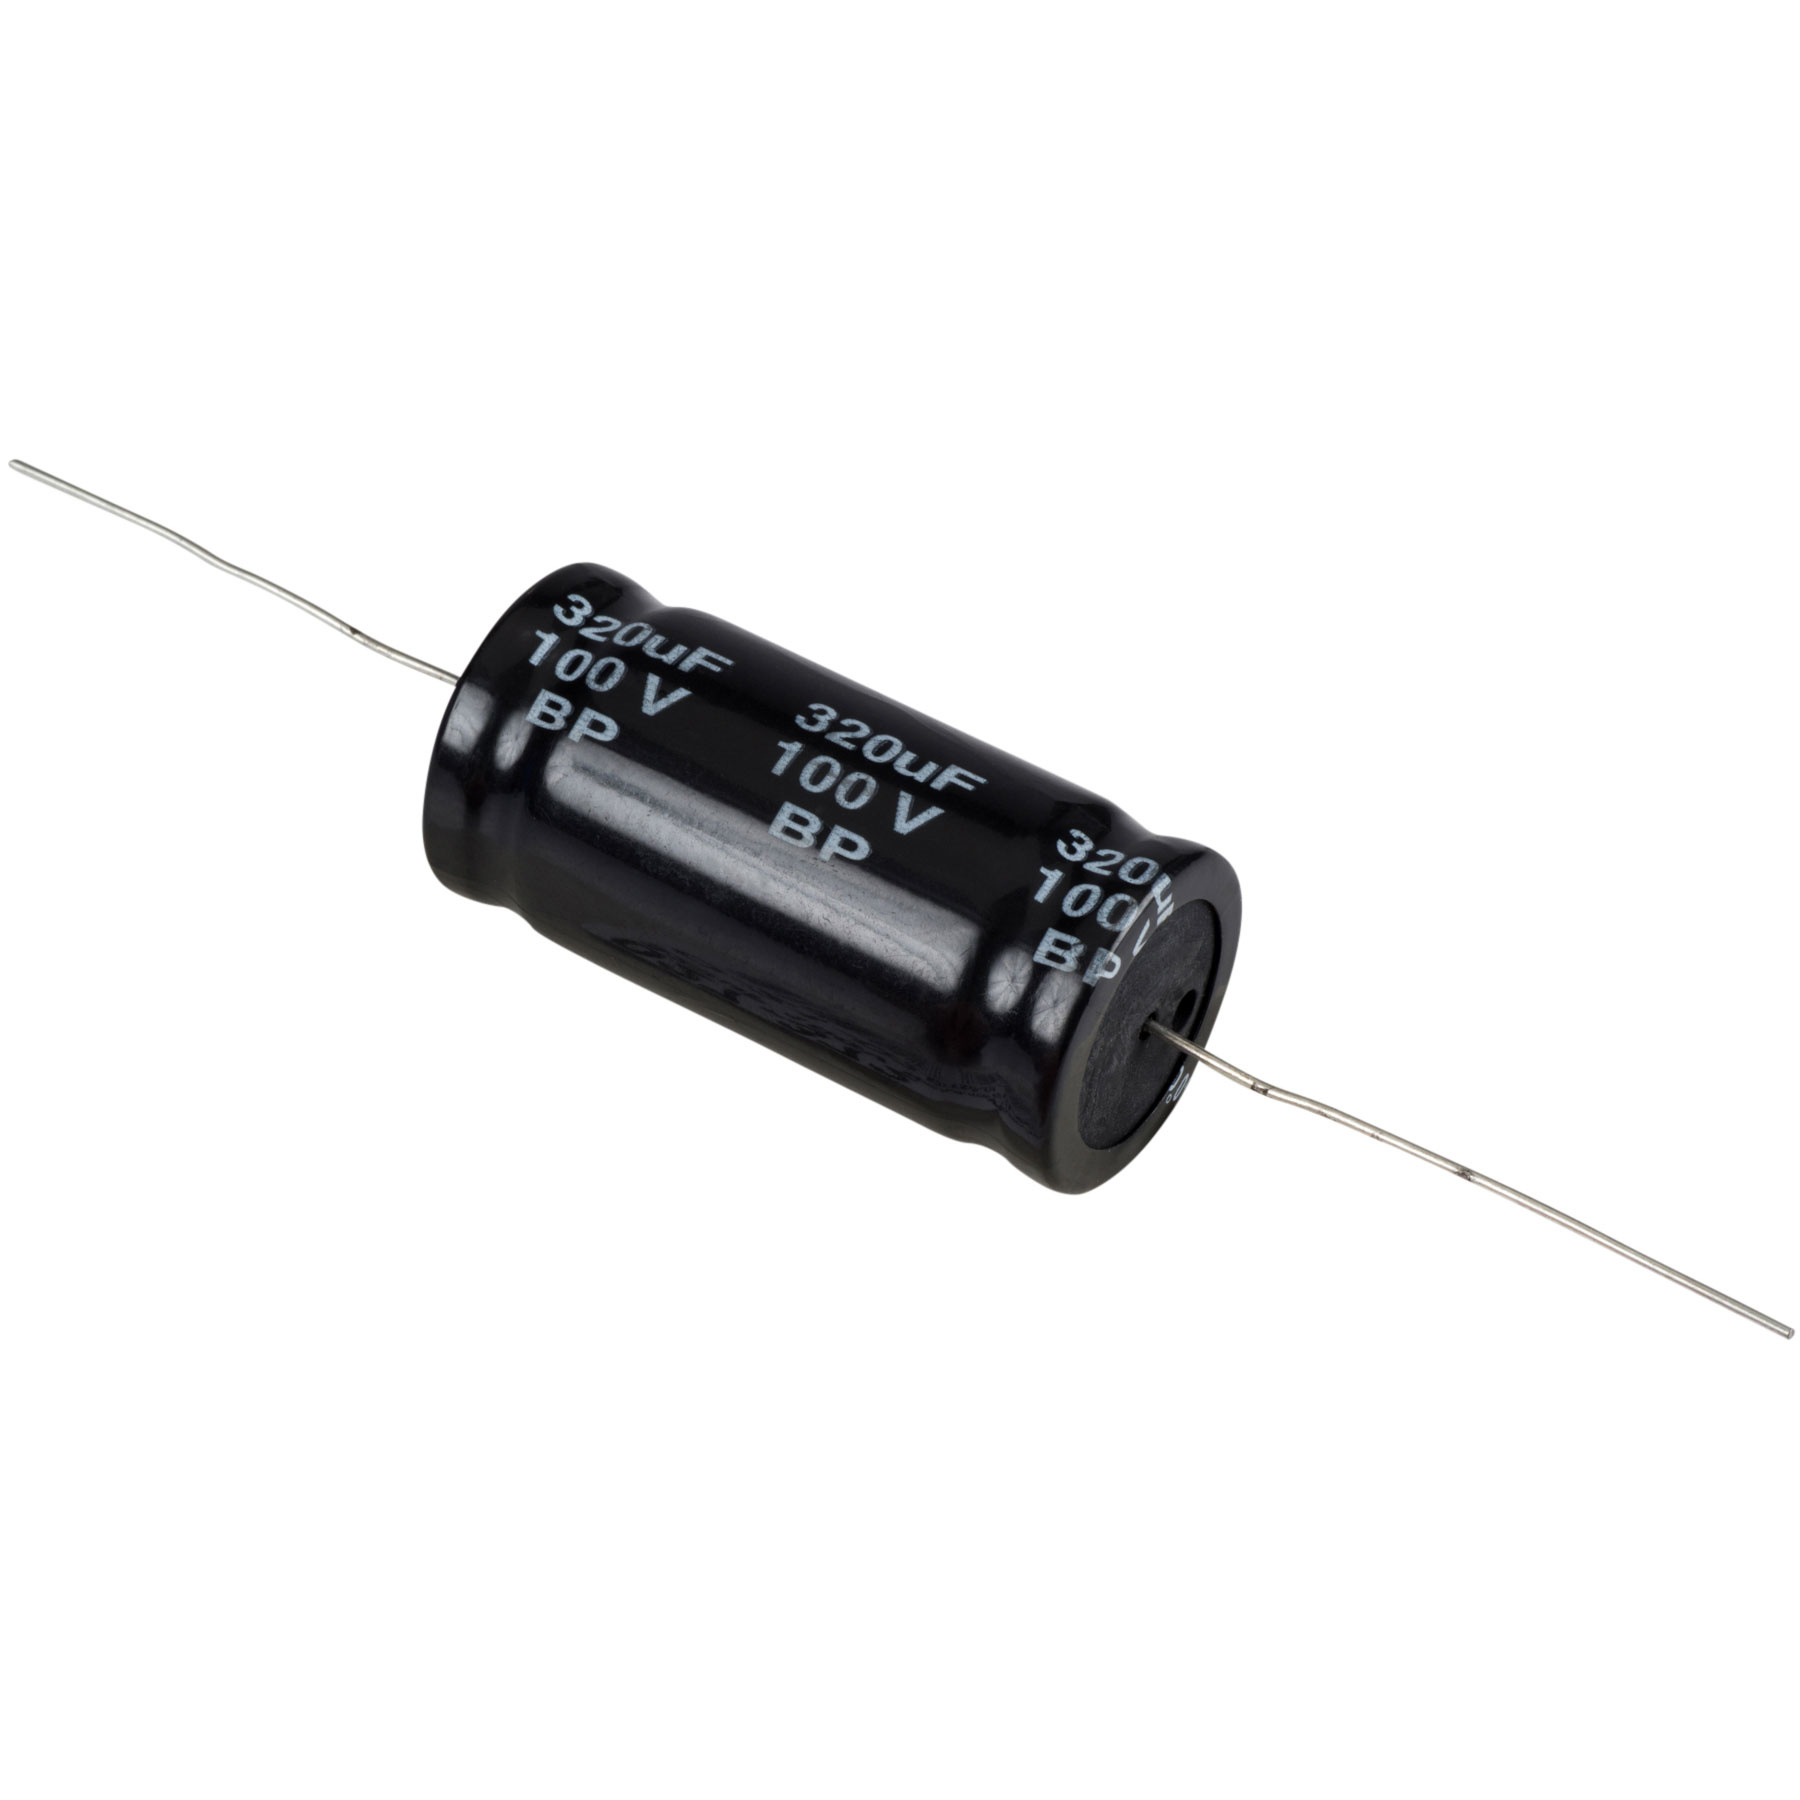 Condensatoare - Condensator electrolitic bipolar 320 µF | 10% | 100 V, audioclub.ro